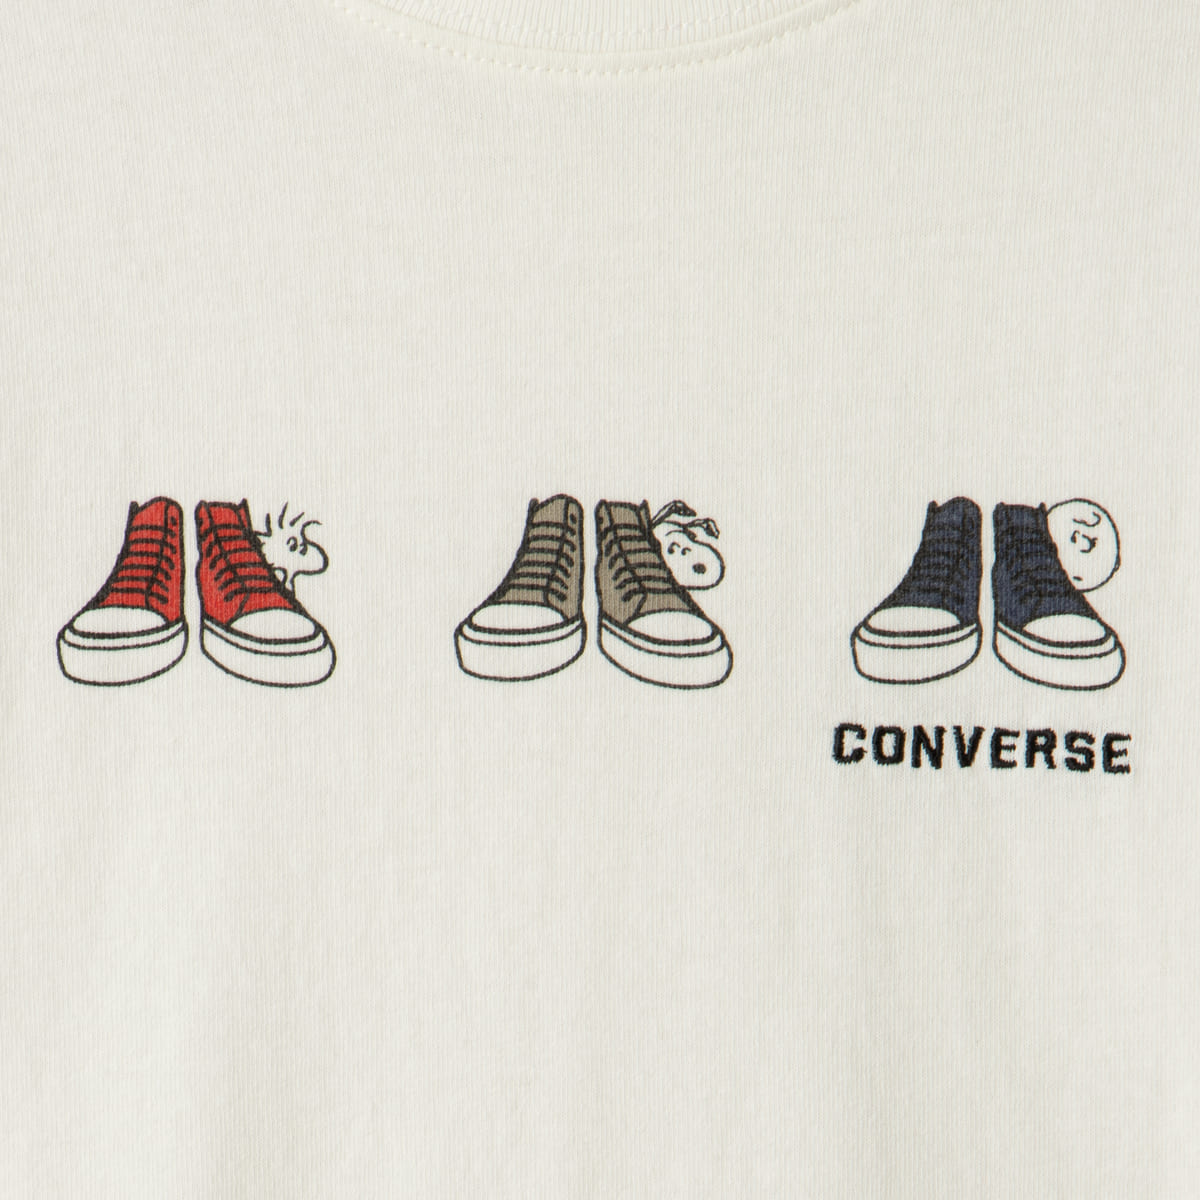 アイコニックな描き下ろしデザインのスヌーピー Plaza Peanuts Converse コラボレーションtシャツ Dtimes